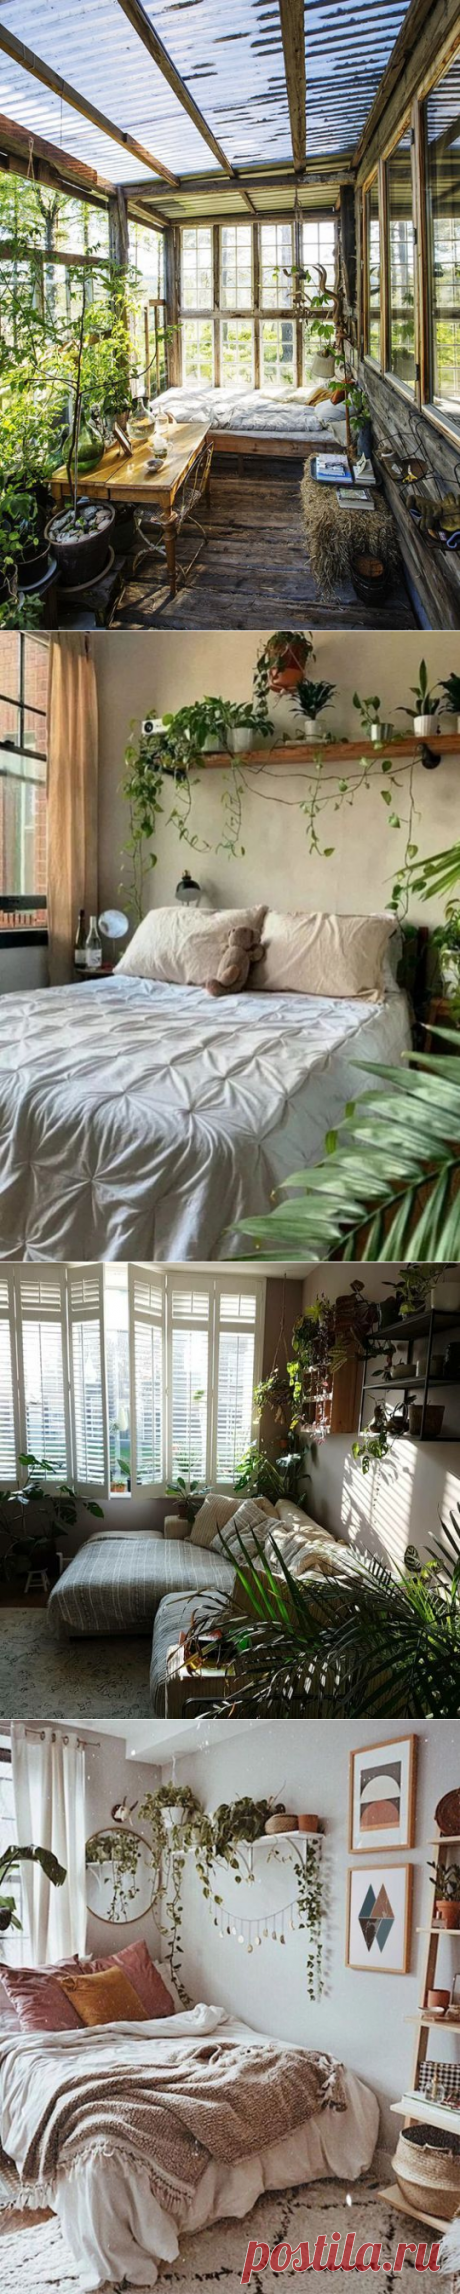 Minimalist Botanical Bedroom Design Ideas - Home Design Ideas